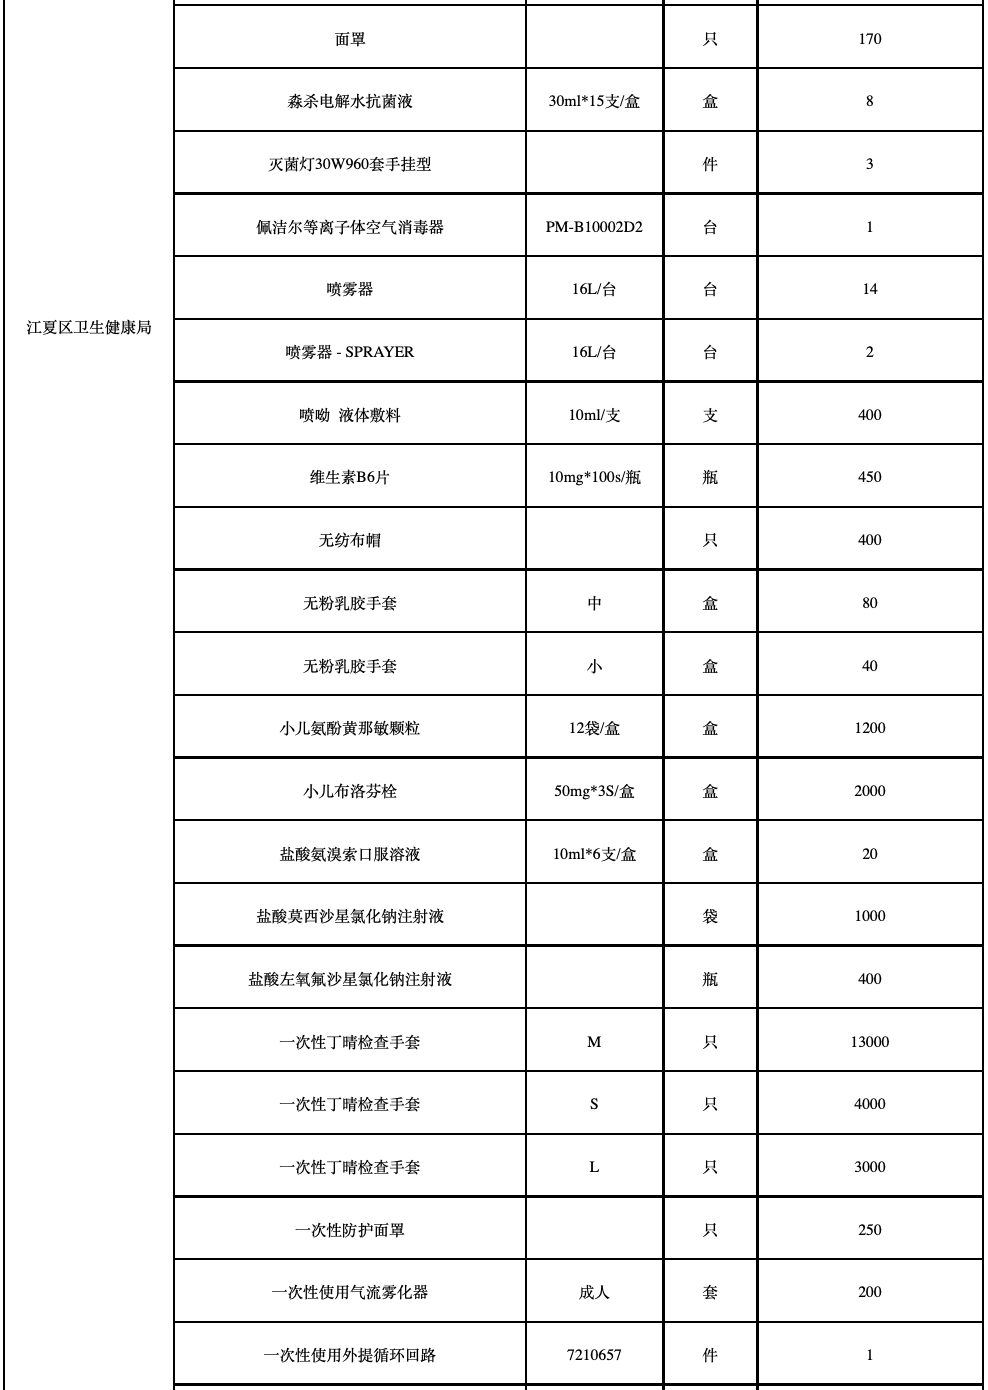 (2月18日)武汉市新冠肺炎疫情防控指挥部发放捐赠物资一览表